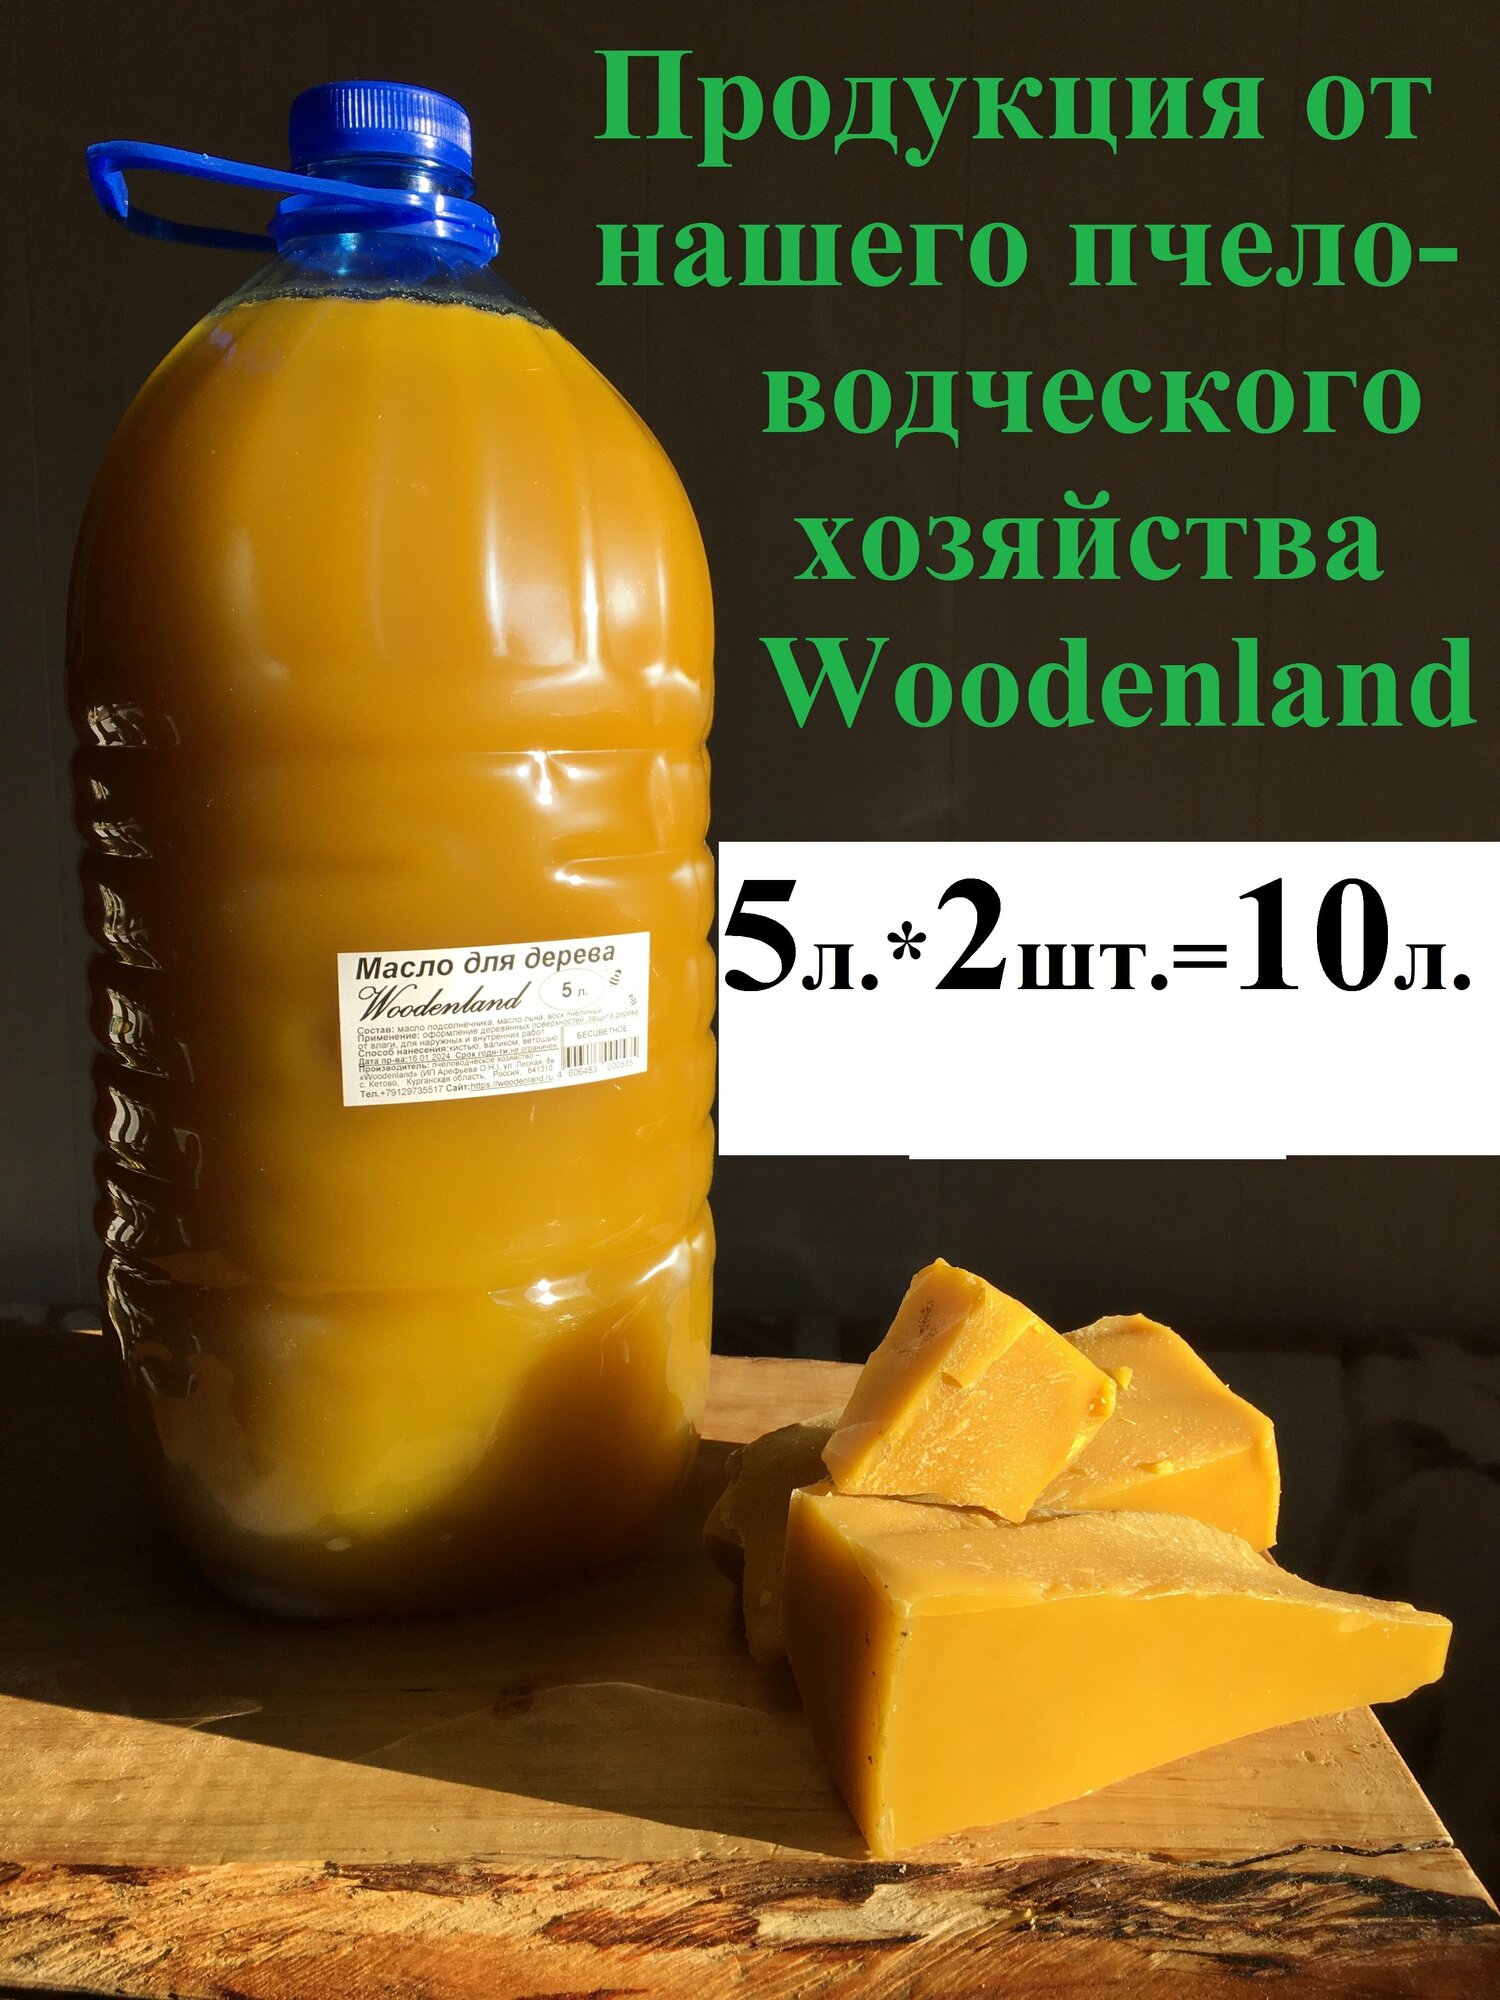 Масло для дерева Woodenland, 5л.*2шт.=10л. (растительные масла, воск пчелиный). Пропитка для дерева.